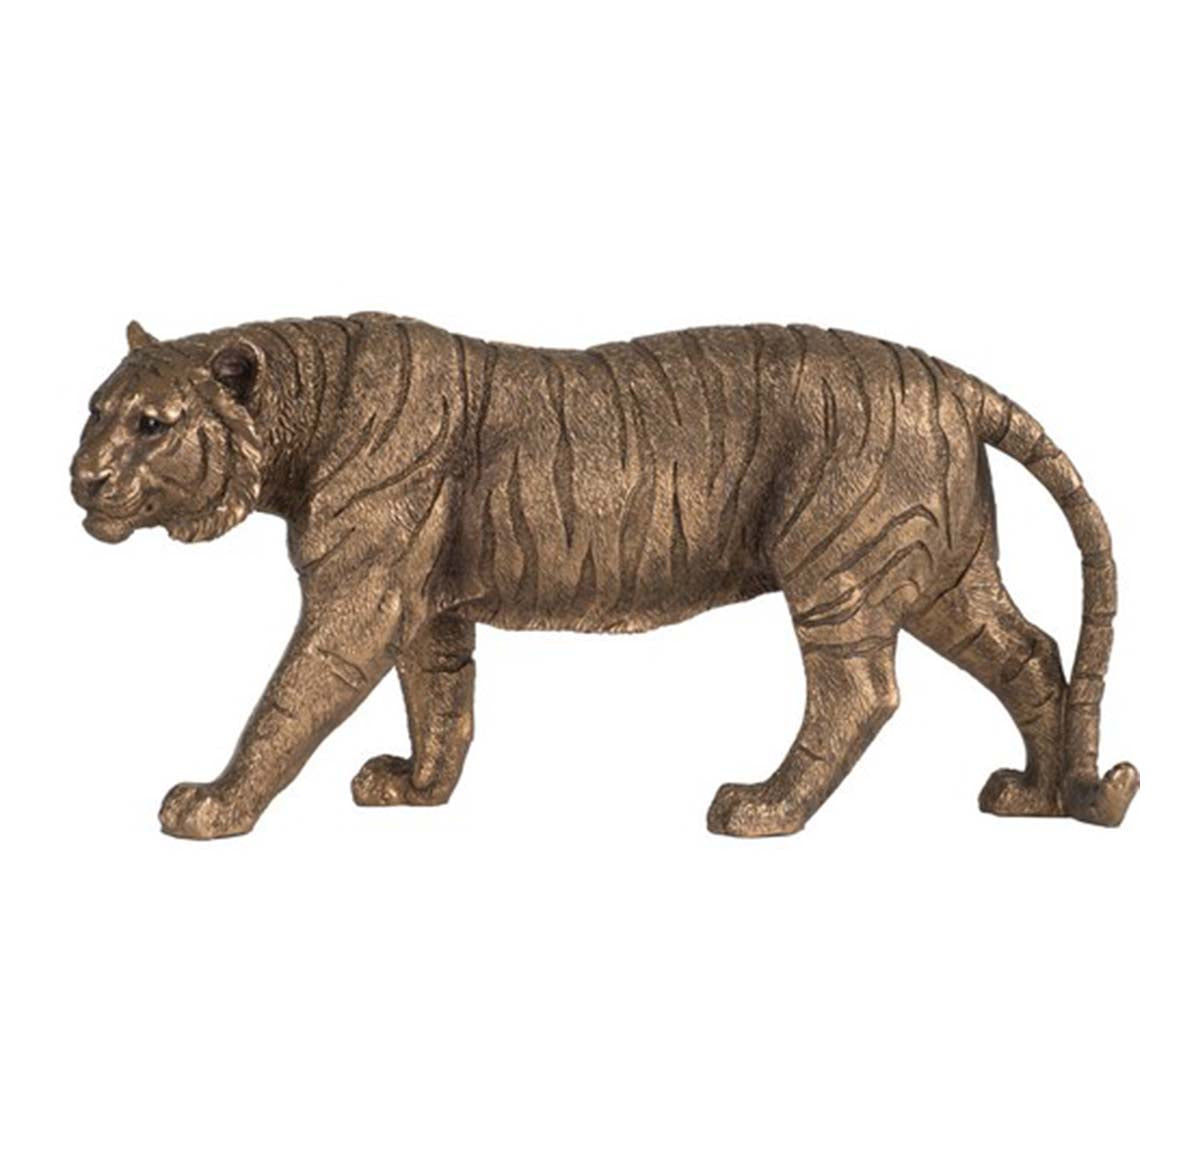 Tabitha Tiger Statue | Small Decor | Ornaments | Home Decor